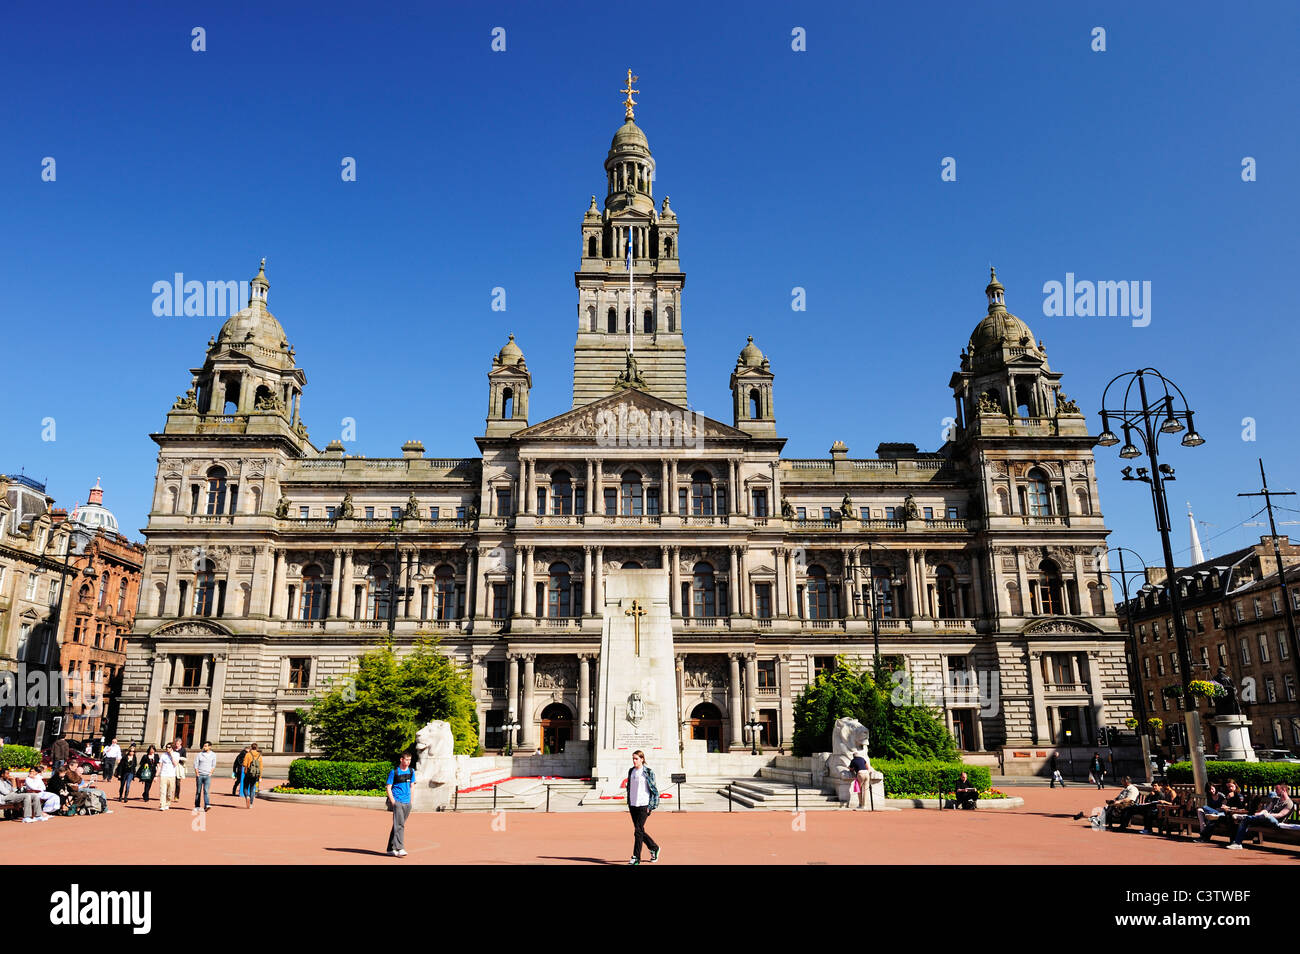 Les chambres de la ville du côté est de la place George Square, Glasgow, Ecosse Banque D'Images